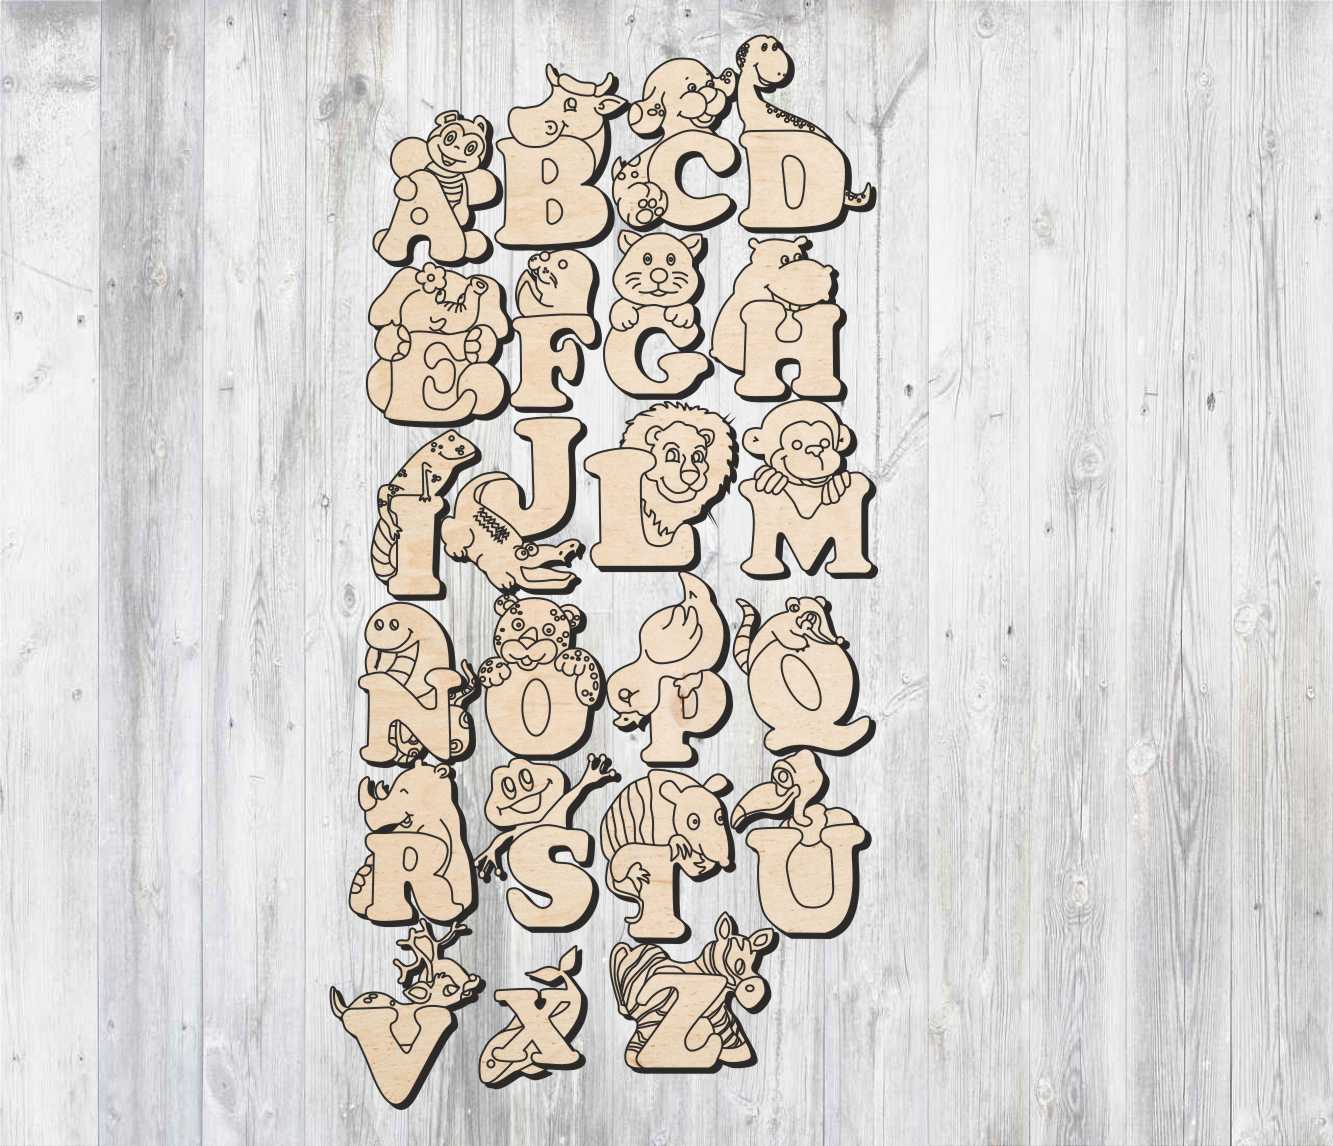 Forme dell'alfabeto di lettere inglesi tagliate al laser